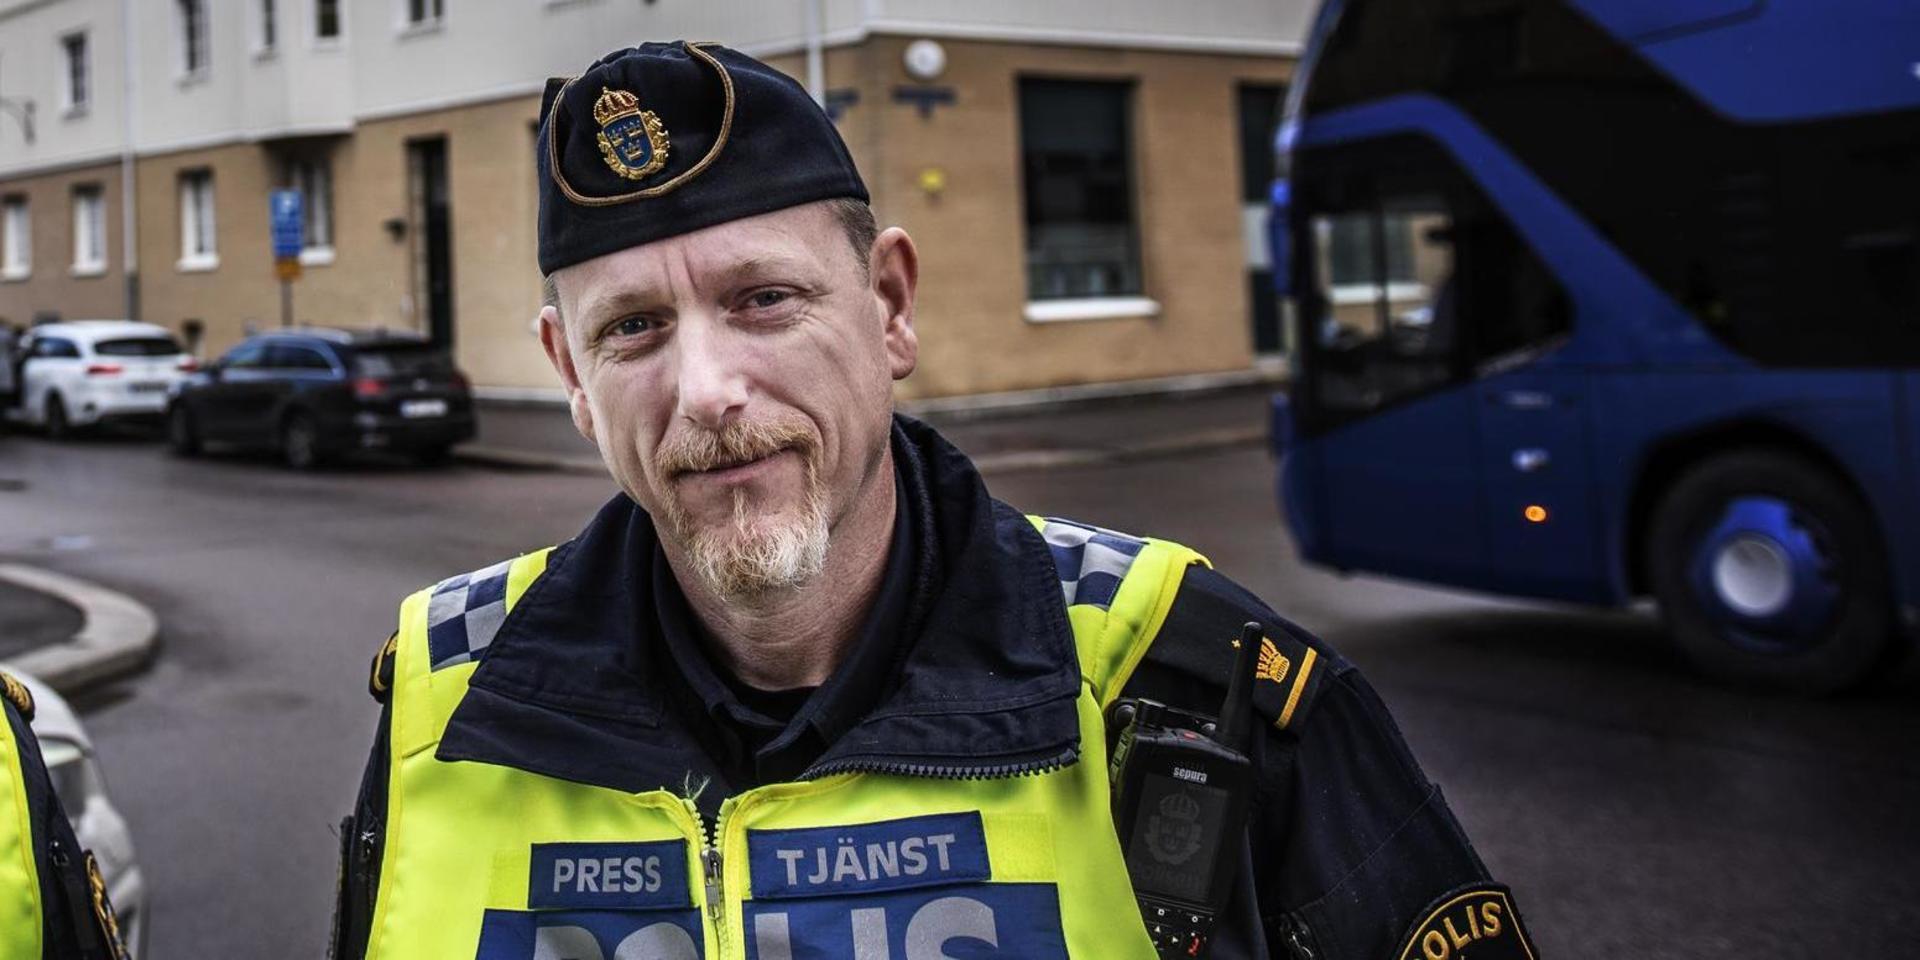 Polisen Hans-Jörgen Ostler känner en frustration efter mordet på hans kollega: ”Jag är bestörtad över att man har låtit det här våldet ta sådana här extrema uttryck och ta sådan plats i samhället”.